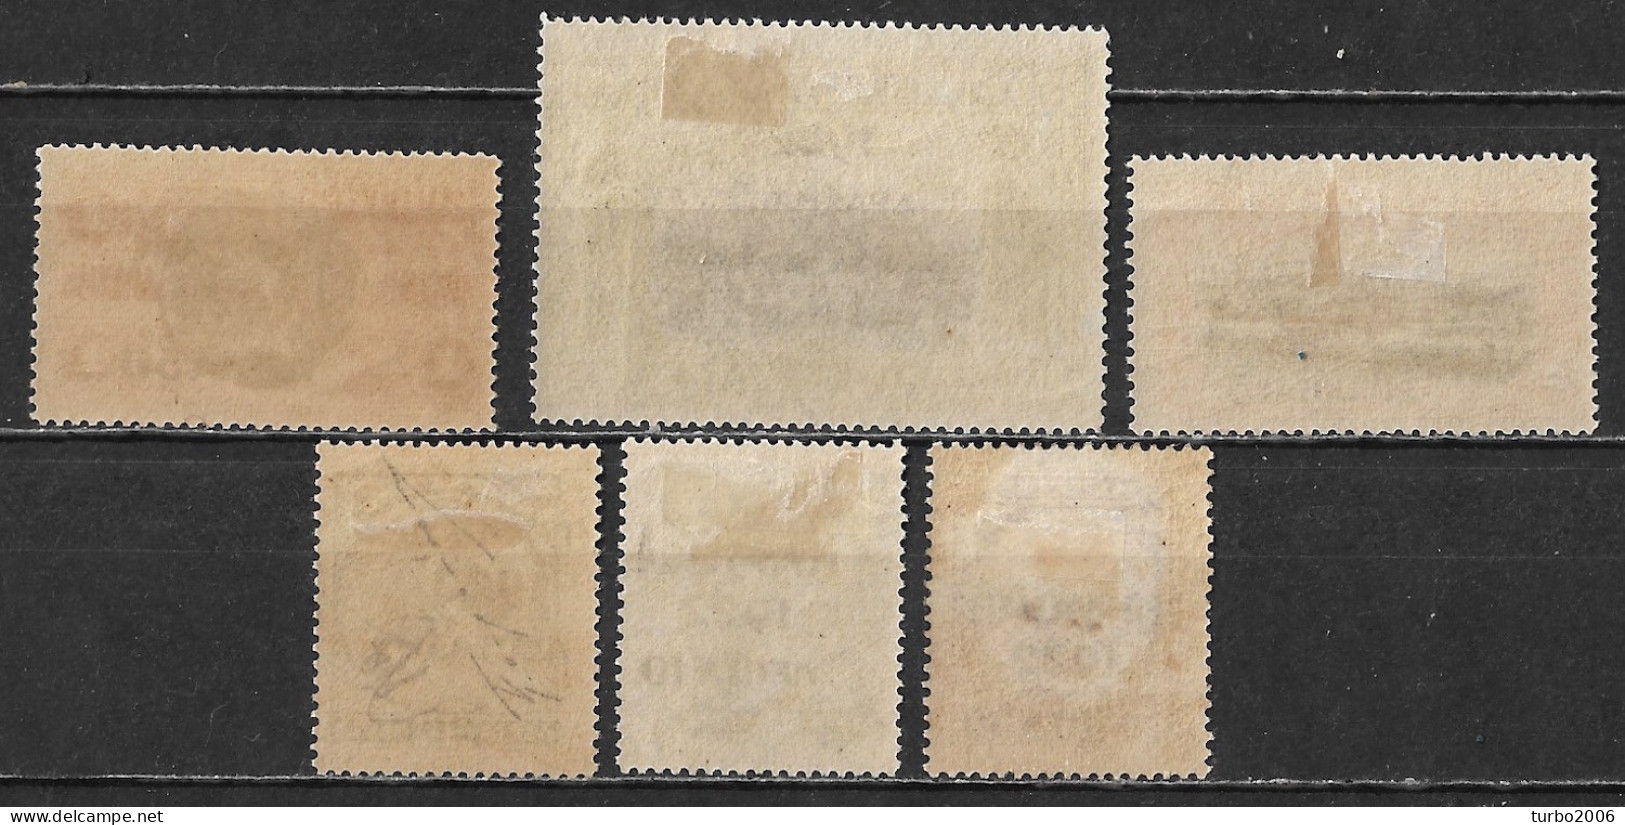 GREECE 1923 1922 Epanastasis Overprint On Cretan Stamps Of 1909 / 10 Complete MH Set Vl. 359 / 364 - Ongebruikt